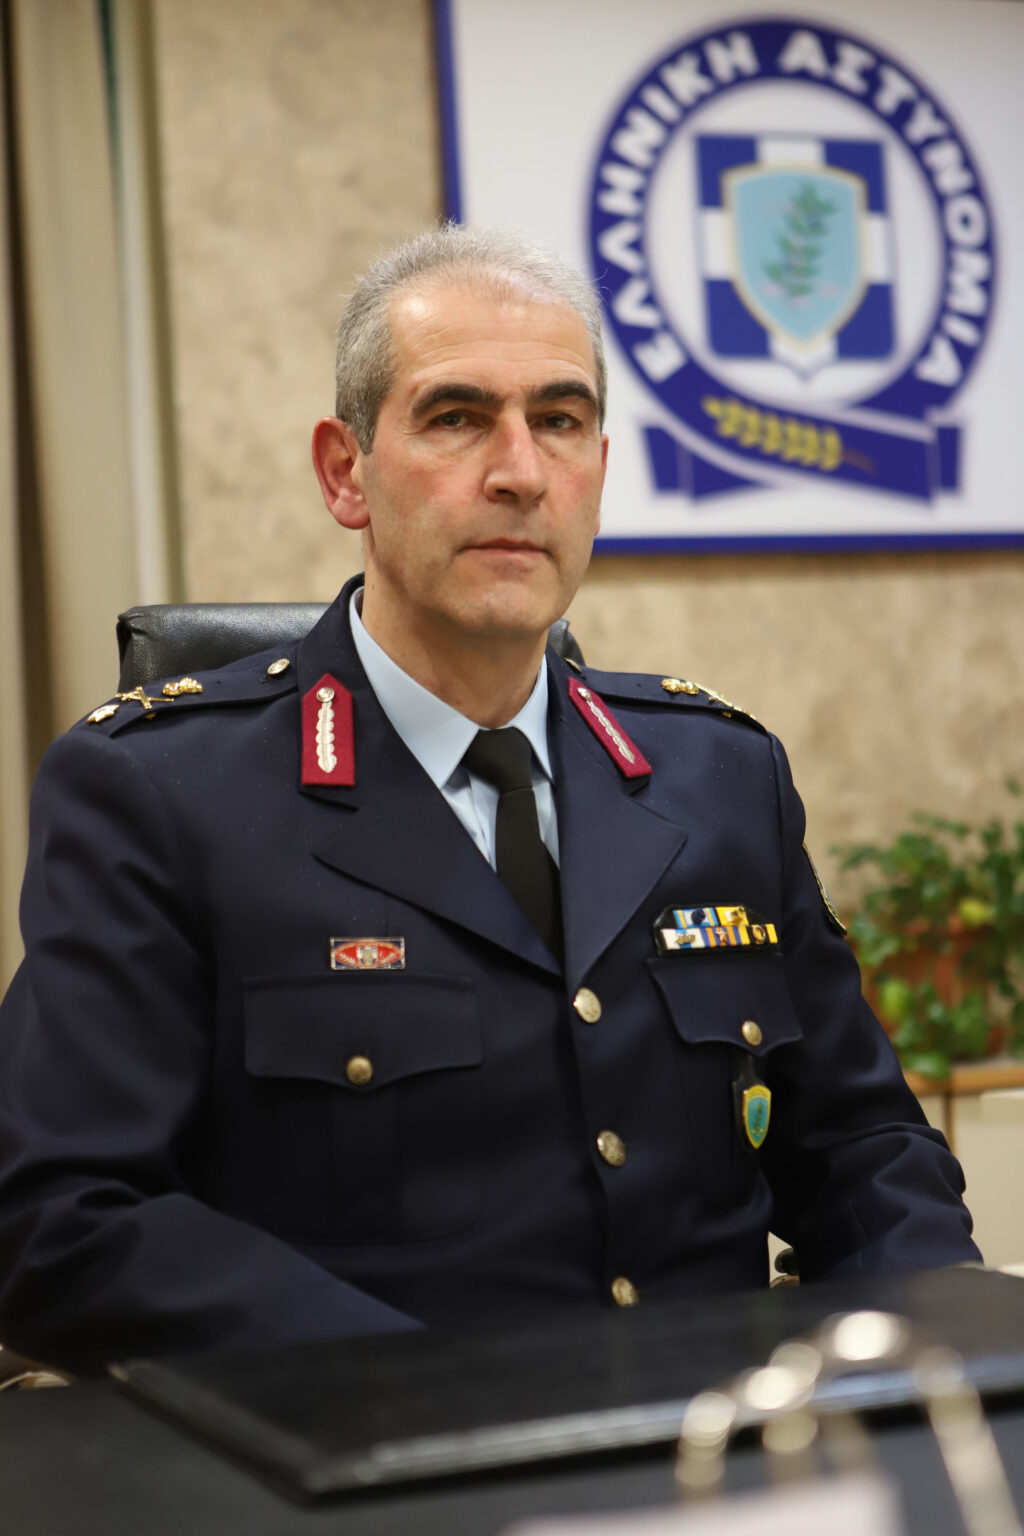 Ανακοινώνεται ότι την 20-01-2024, μετά από απόφαση του Ανωτάτου Συμβούλιου Κρίσεων της Ελληνικής Αστυνομίας, ανέλαβε και εκτελεί καθήκοντα Γενικού Περιφερειακού Αστυνομικού Διευθυντή Δυτικής Μακεδονίας, ο Ταξίαρχος Κωνσταντίνος ΣΠΑΝΟΥΔΗΣ του Κυριάκου.